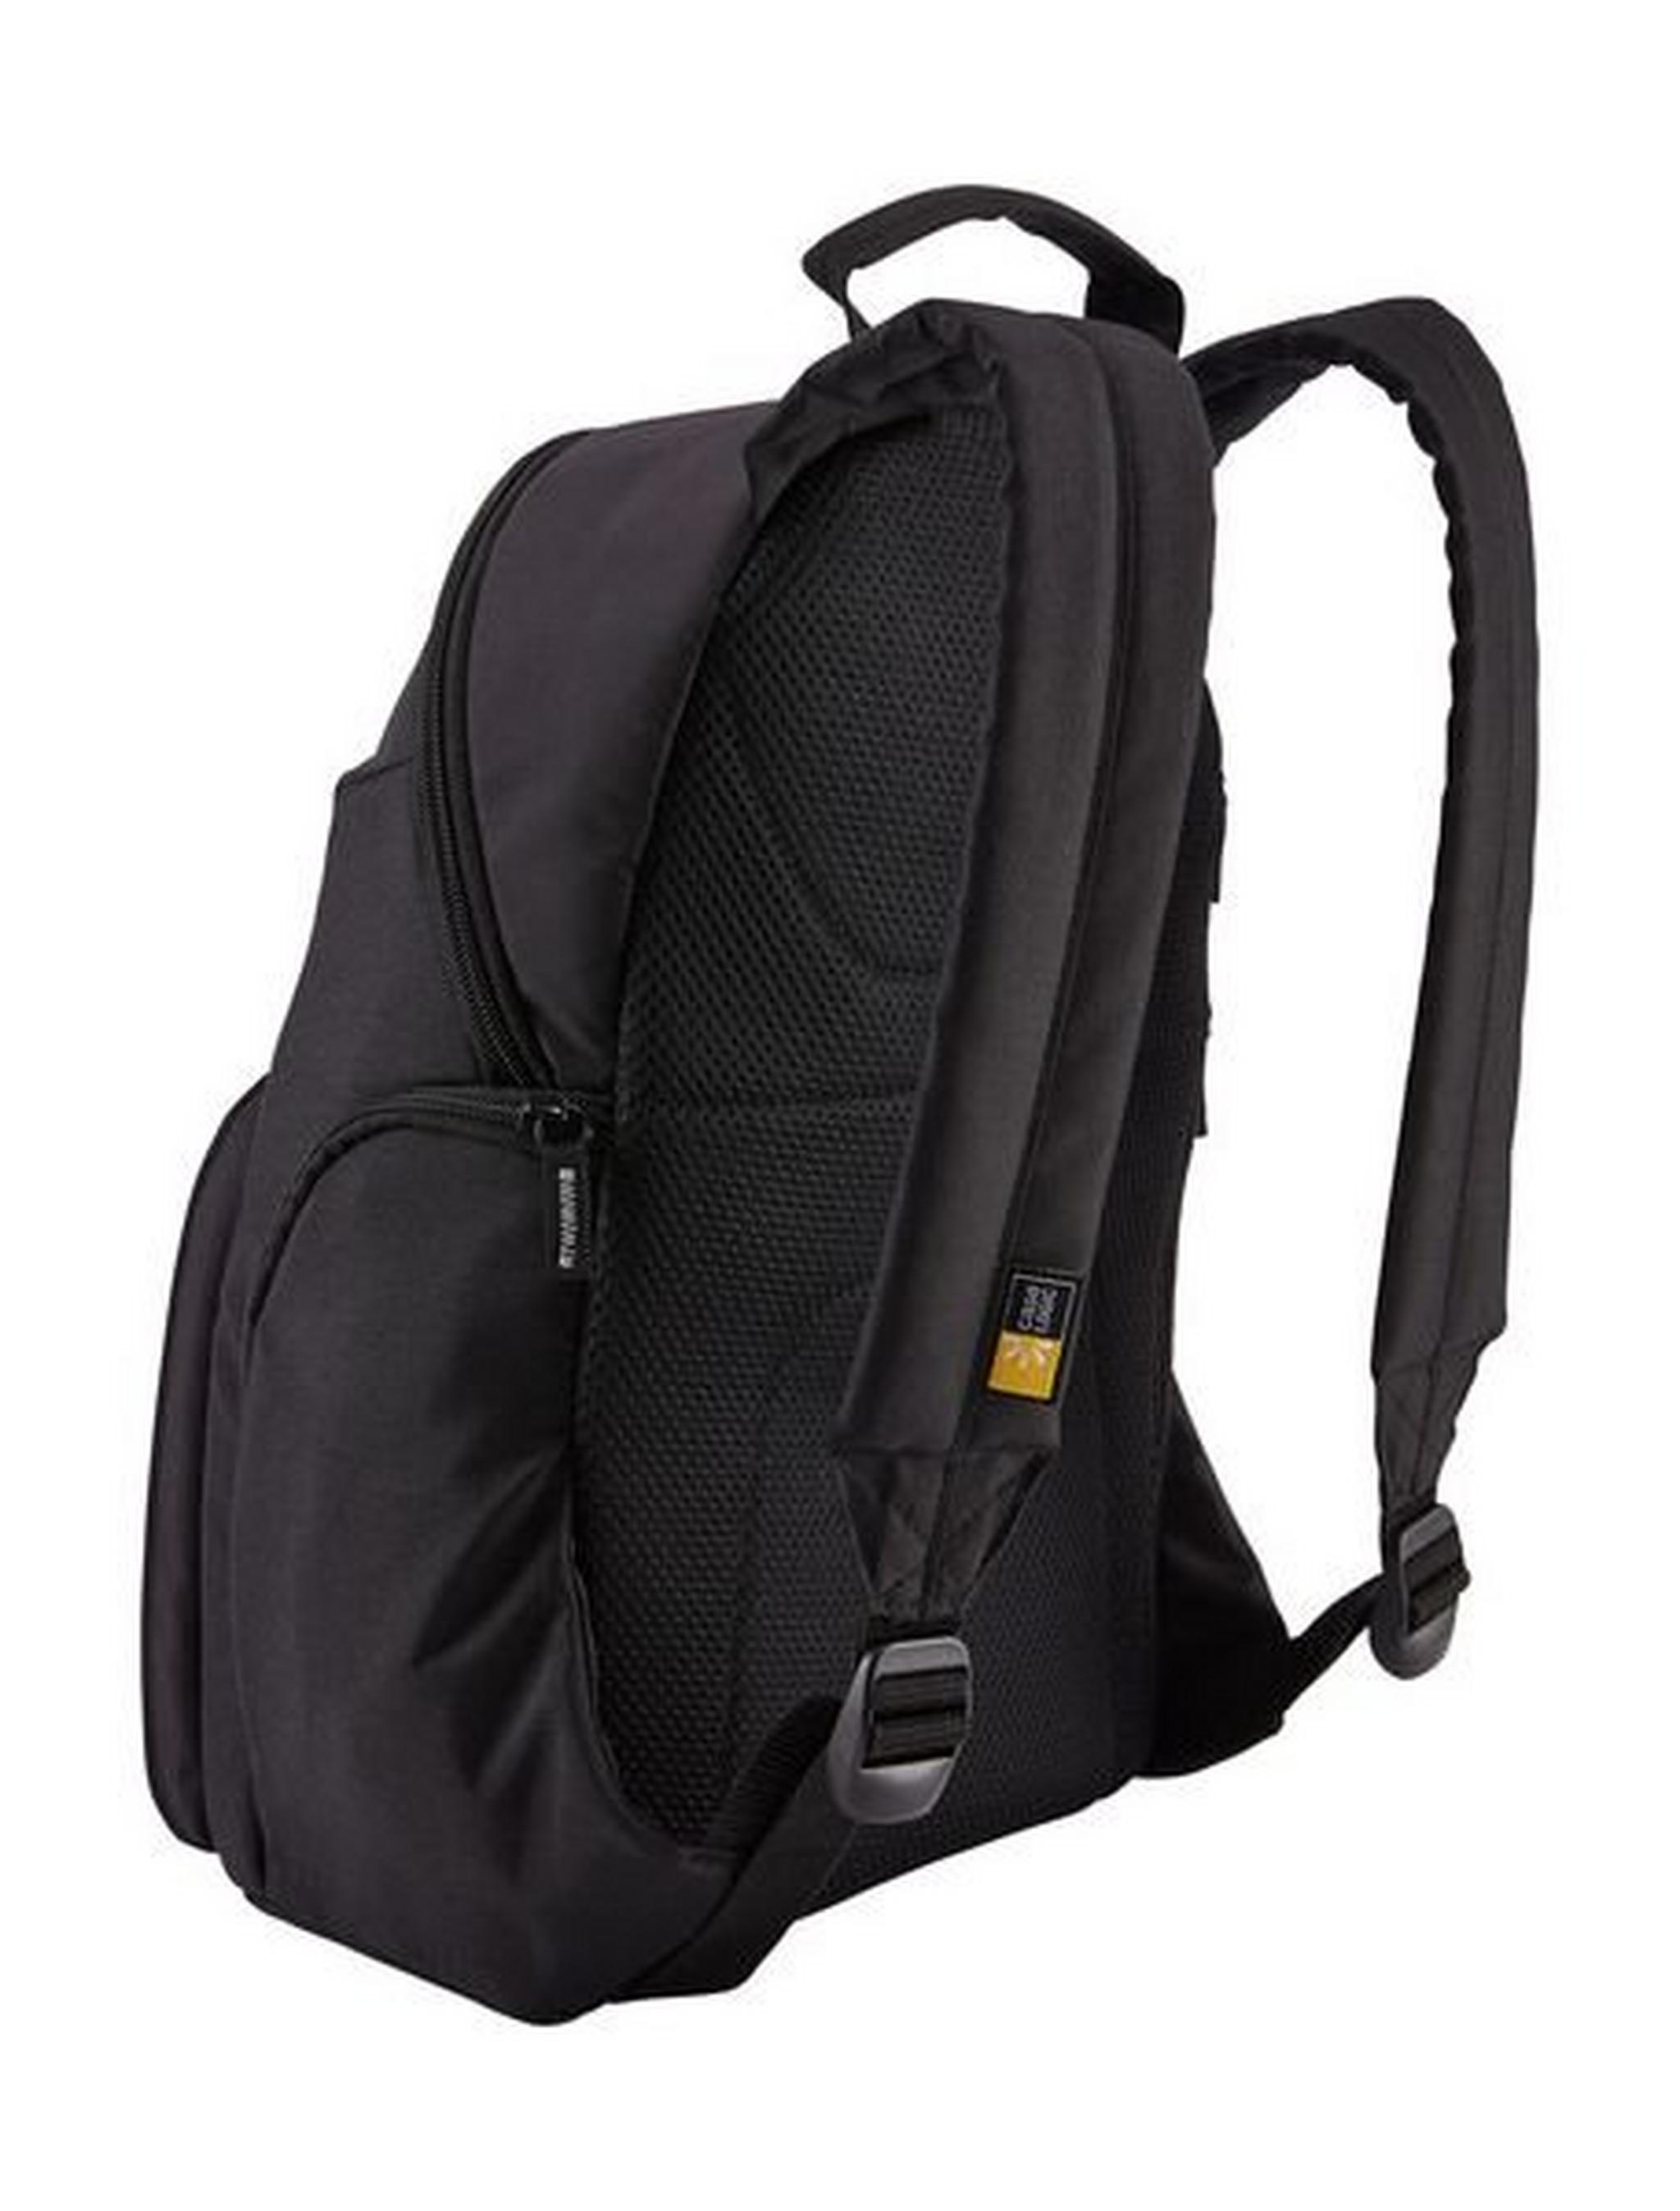 Case Logic TBC411 Backpack For DSLR Camera - Black